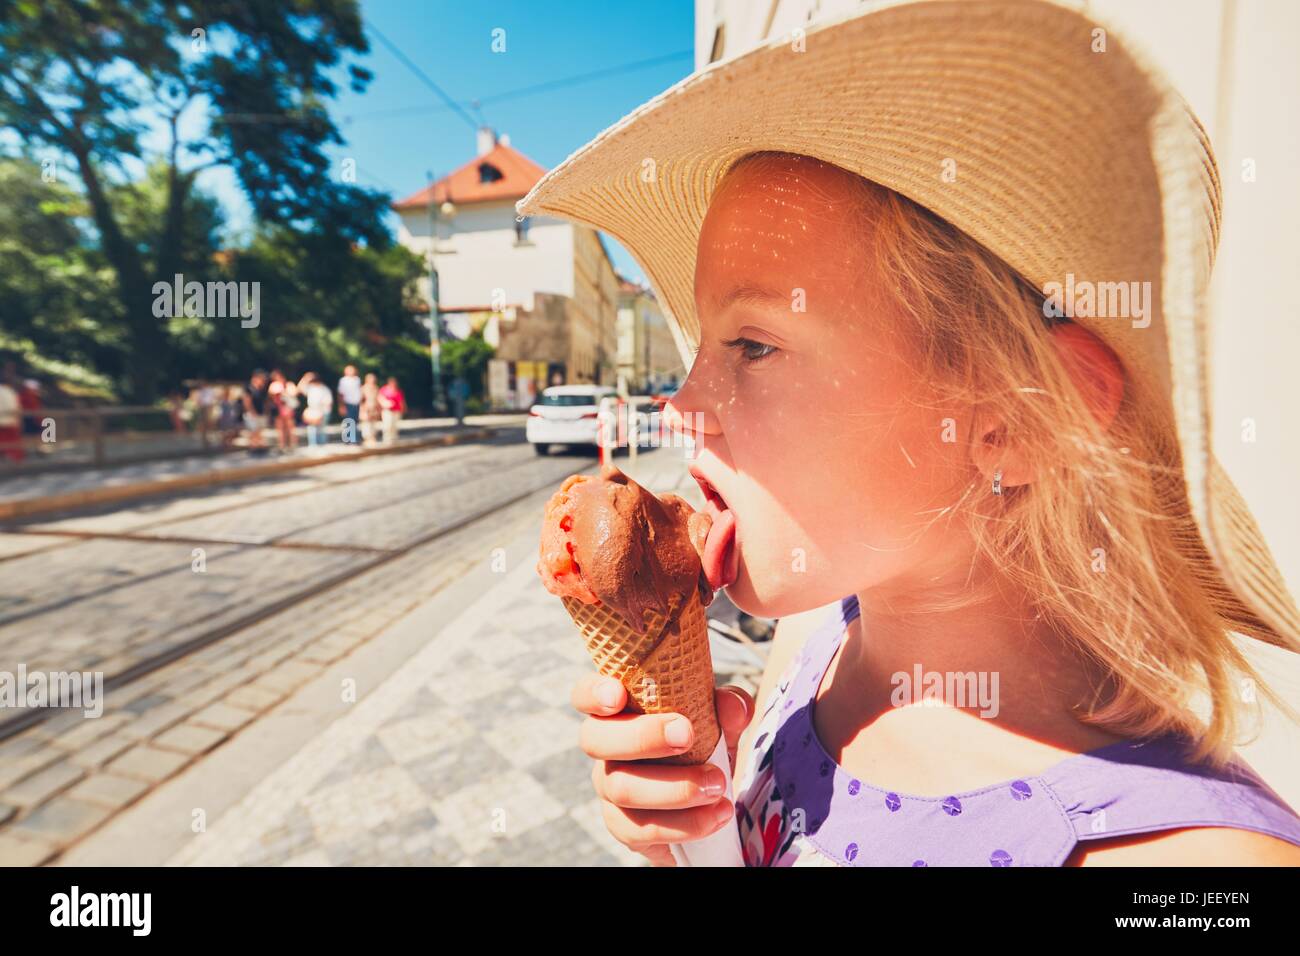 Sommertag in der Stadt. Niedliche kleine Mädchen mit Hut große Eis essen Stockfoto